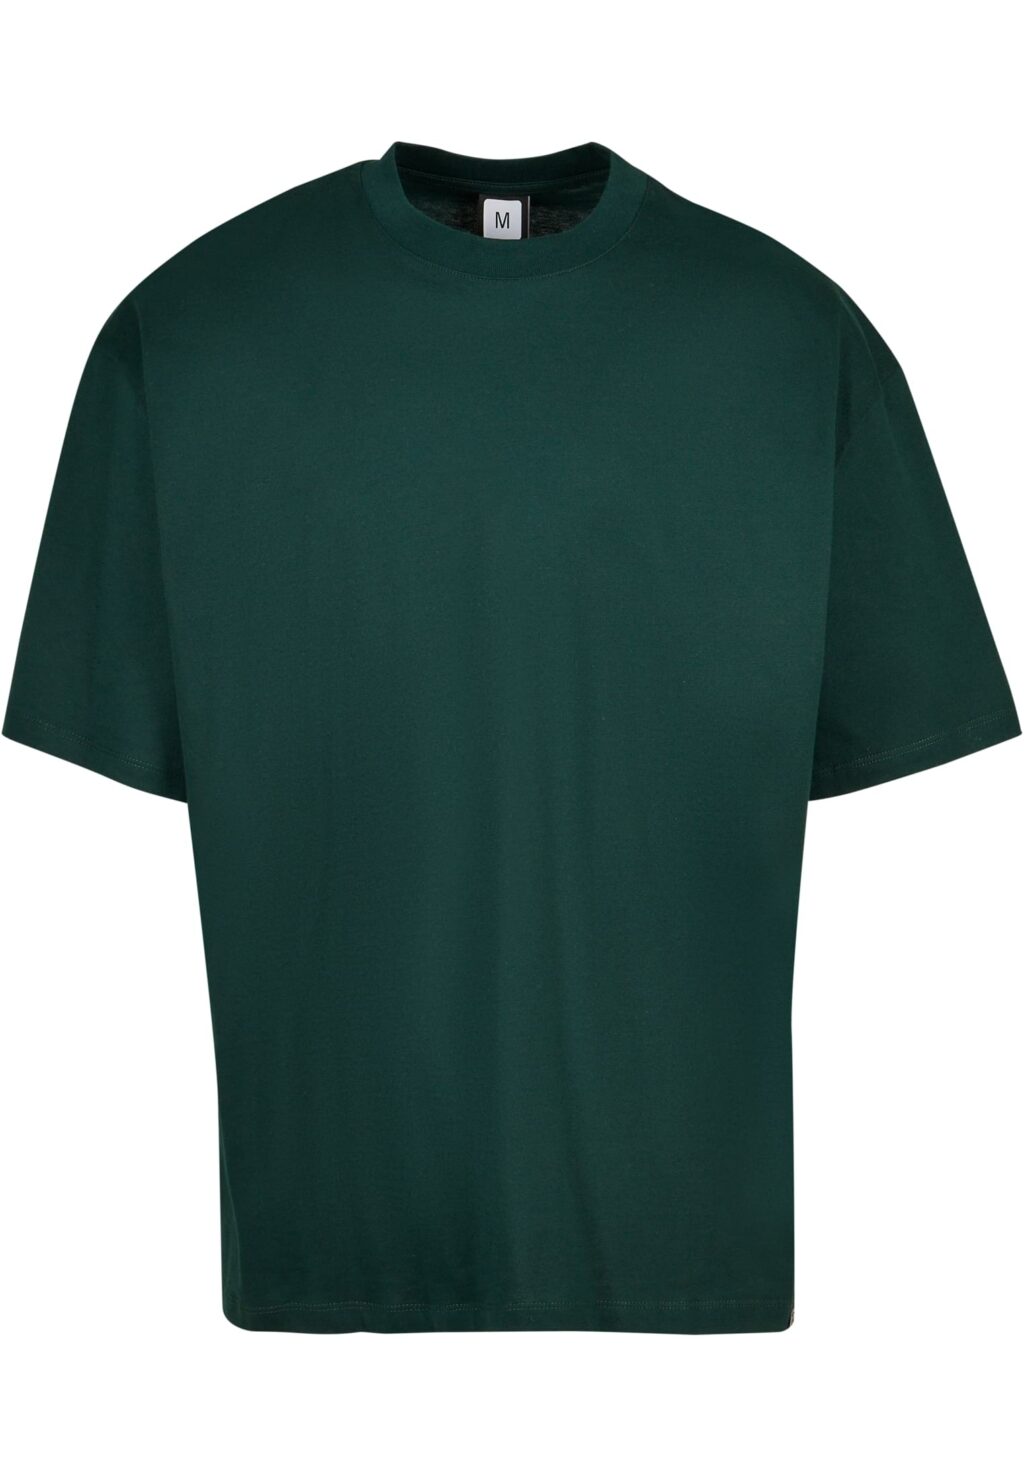 DEF T-Shirt dark green DFTS228